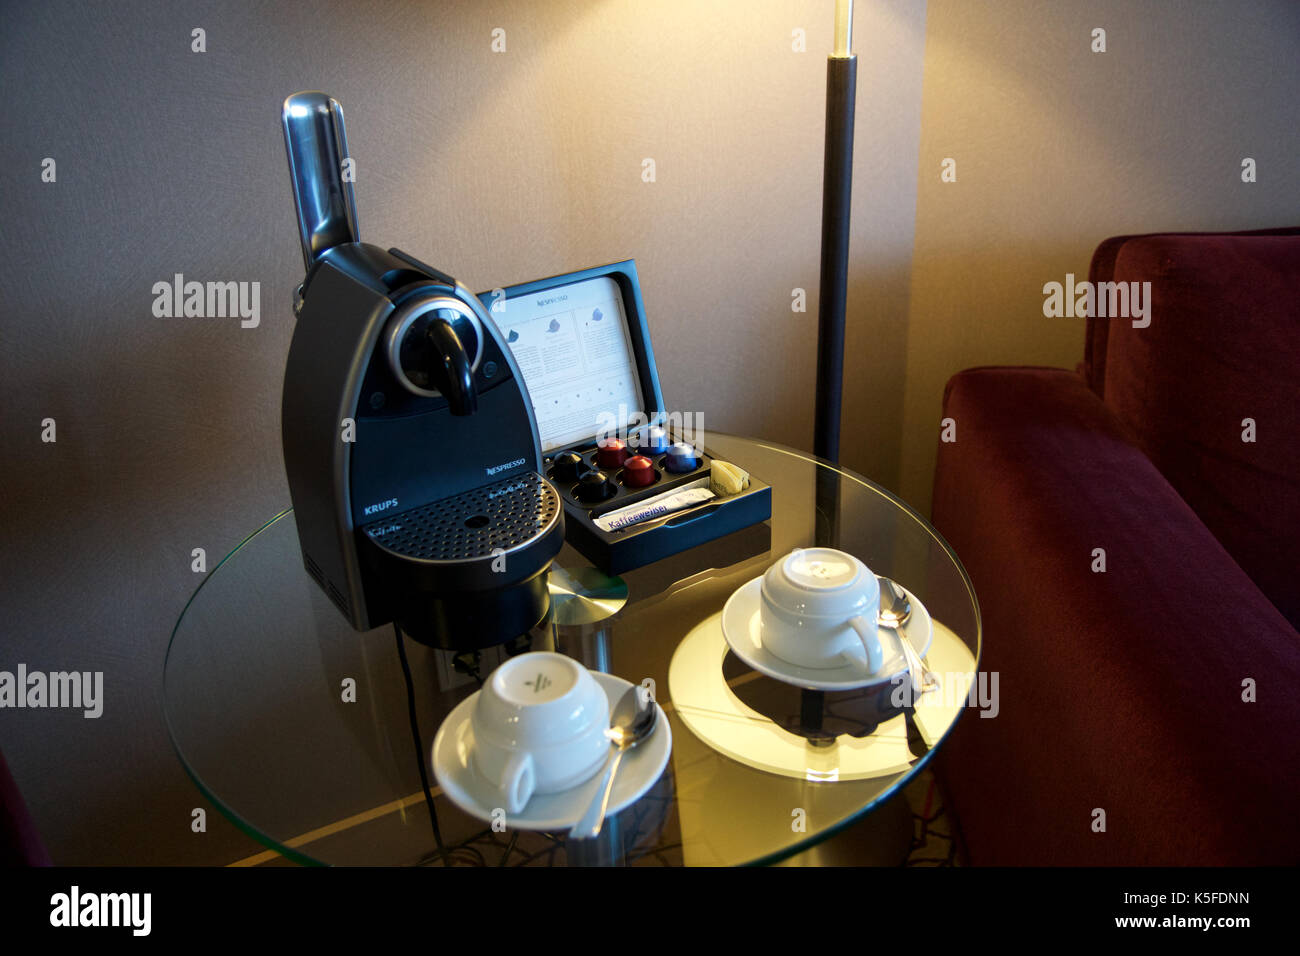 Mainz, Allemagne - May 8th, 2017 : machine à café capsule moderne pour faire des d'espresso dans une suite hôtel de luxe Banque D'Images